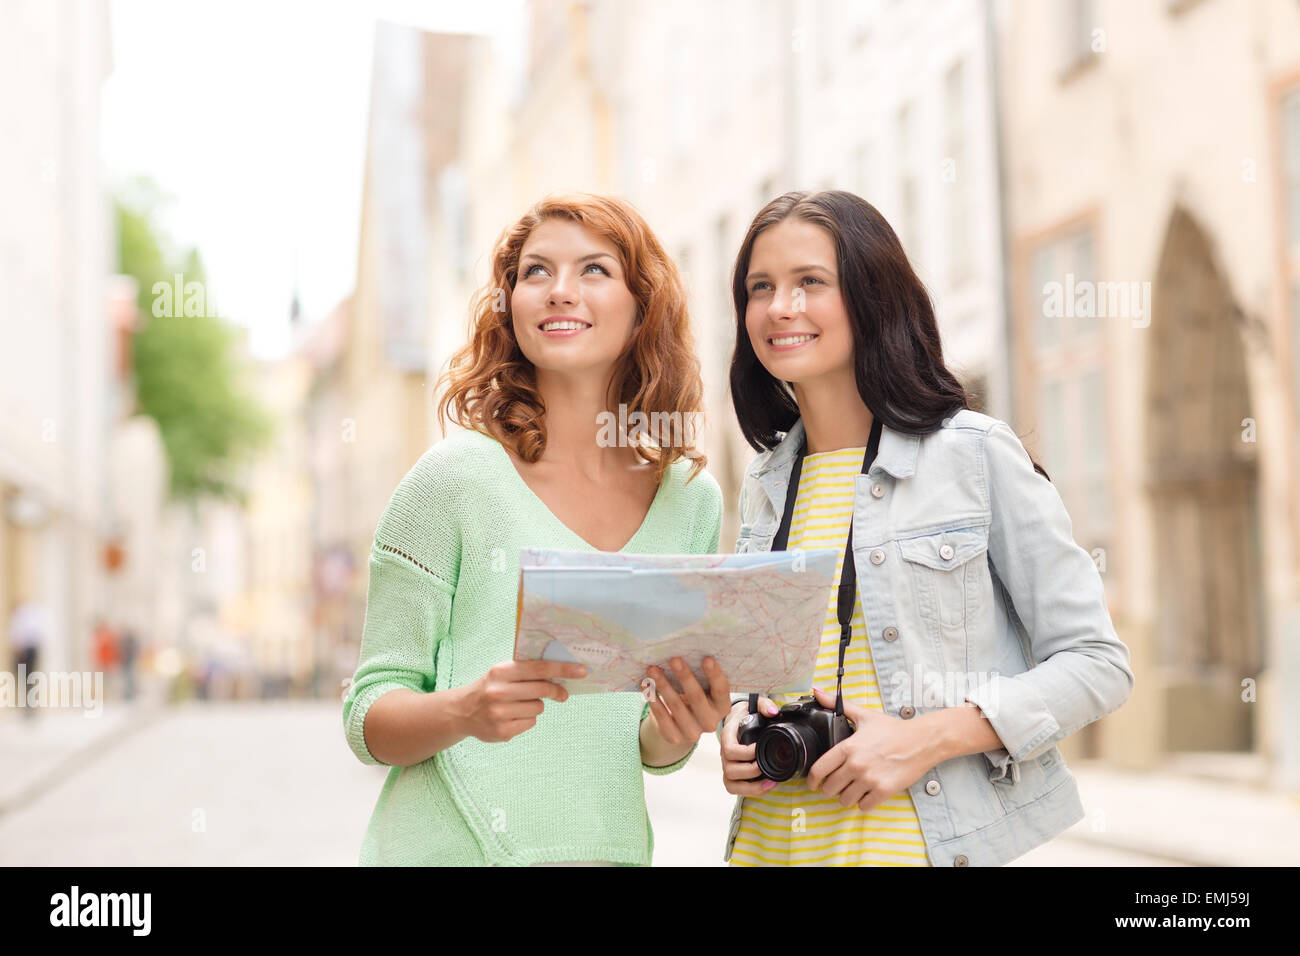 Smiling teenage girls avec la carte et l'appareil photo Banque D'Images